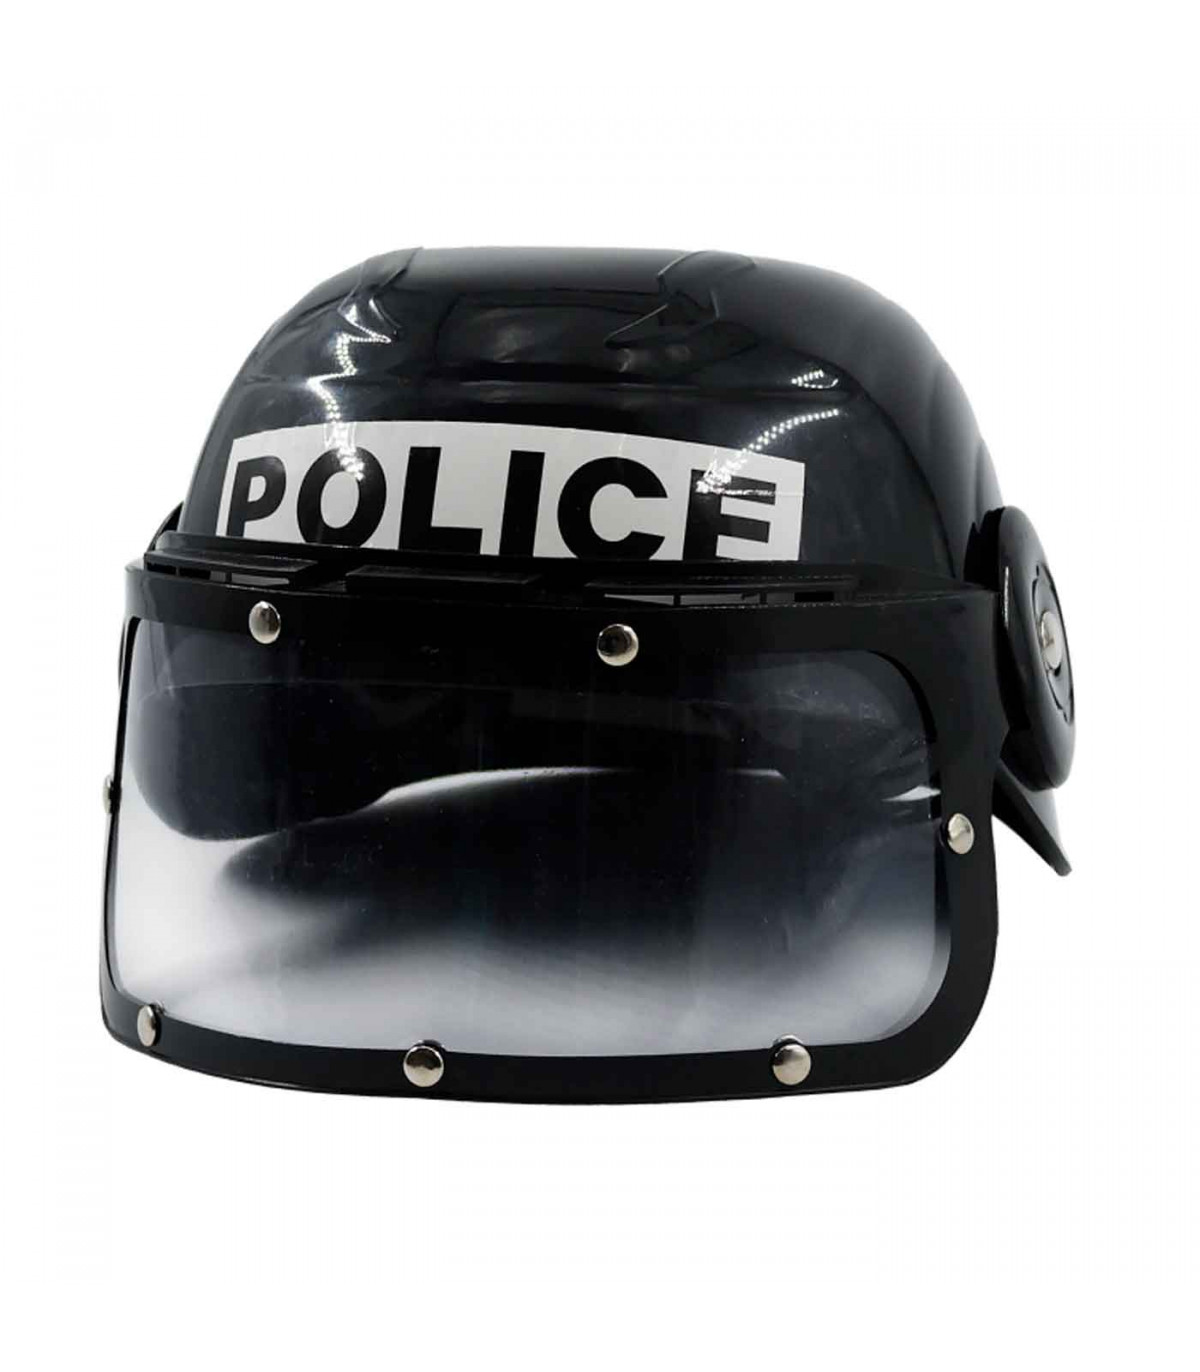 de policía con visor negro para niños para halloween, fiestas y celebraciones. 12 x 20 x 22 cm